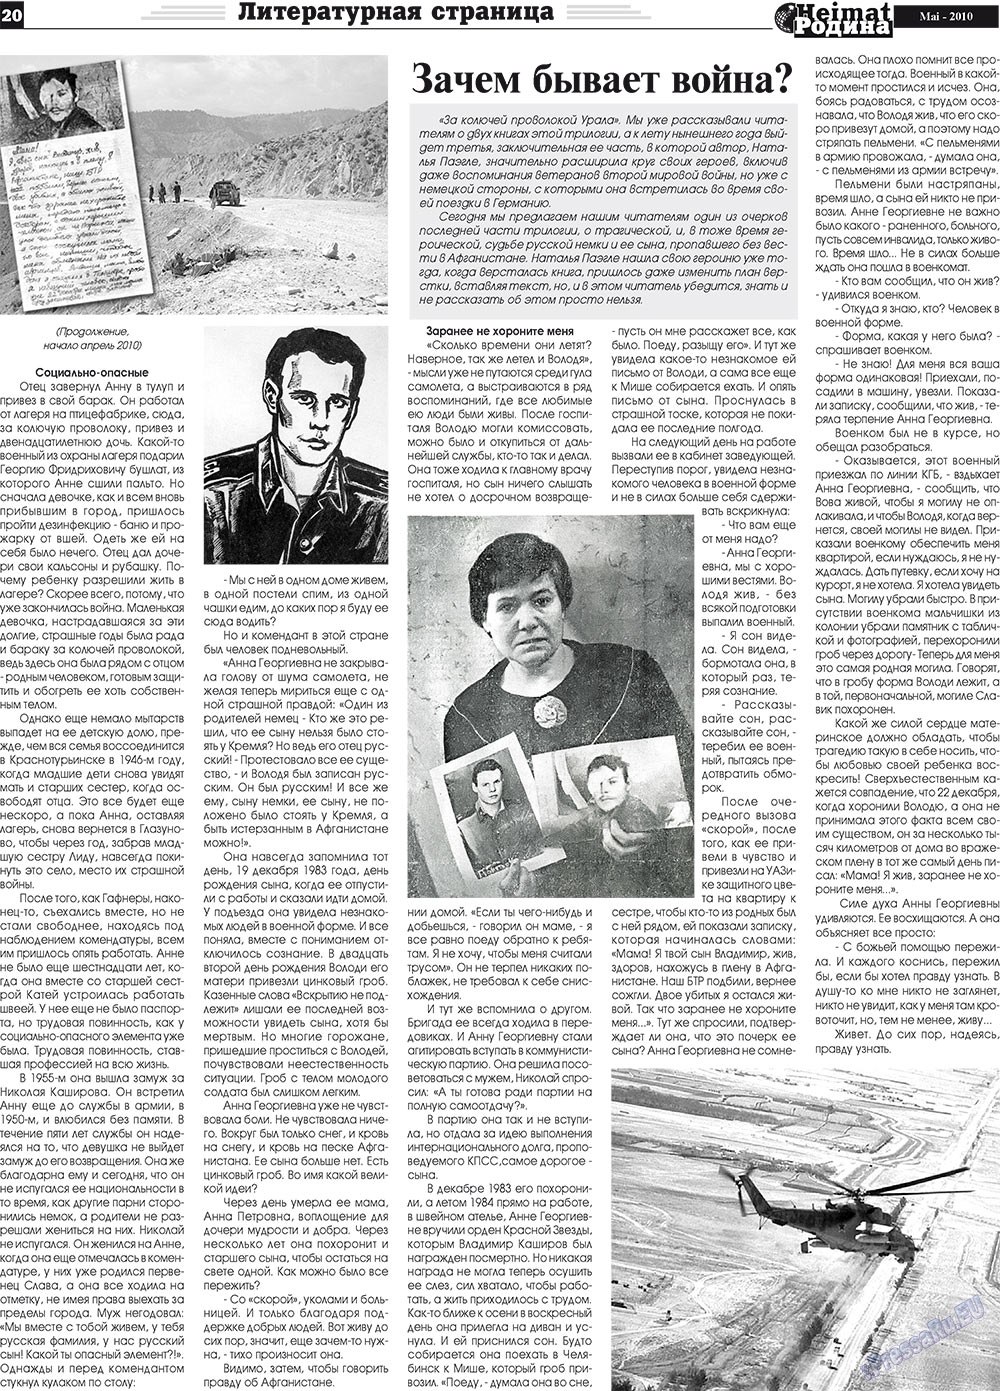 Heimat-Родина (газета). 2010 год, номер 5, стр. 20